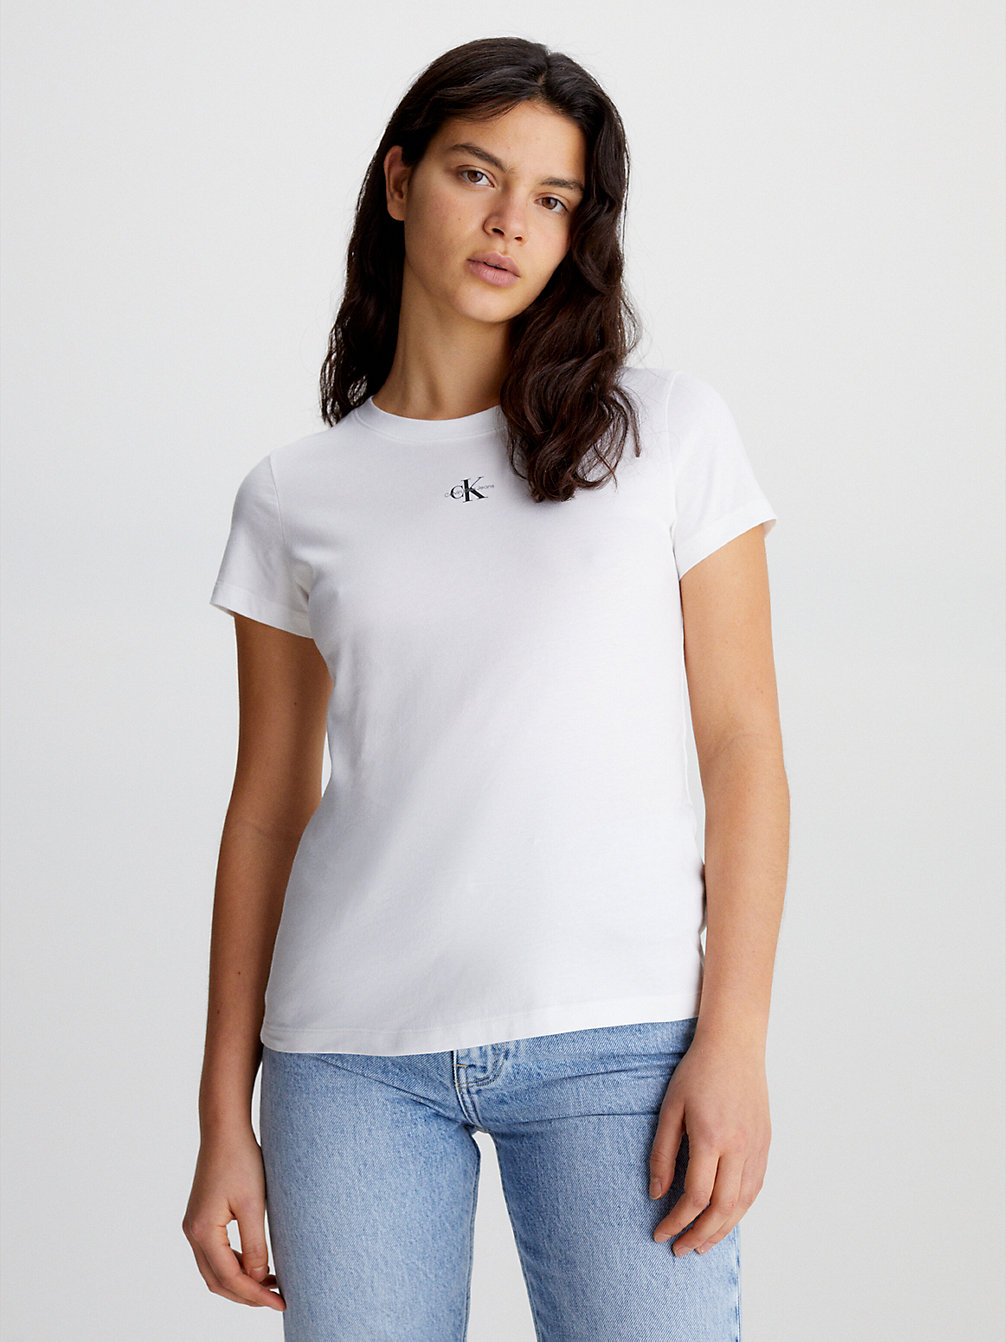 BRIGHT WHITE Schmales T-Shirt Aus Bio-Baumwolle undefined Damen Calvin Klein